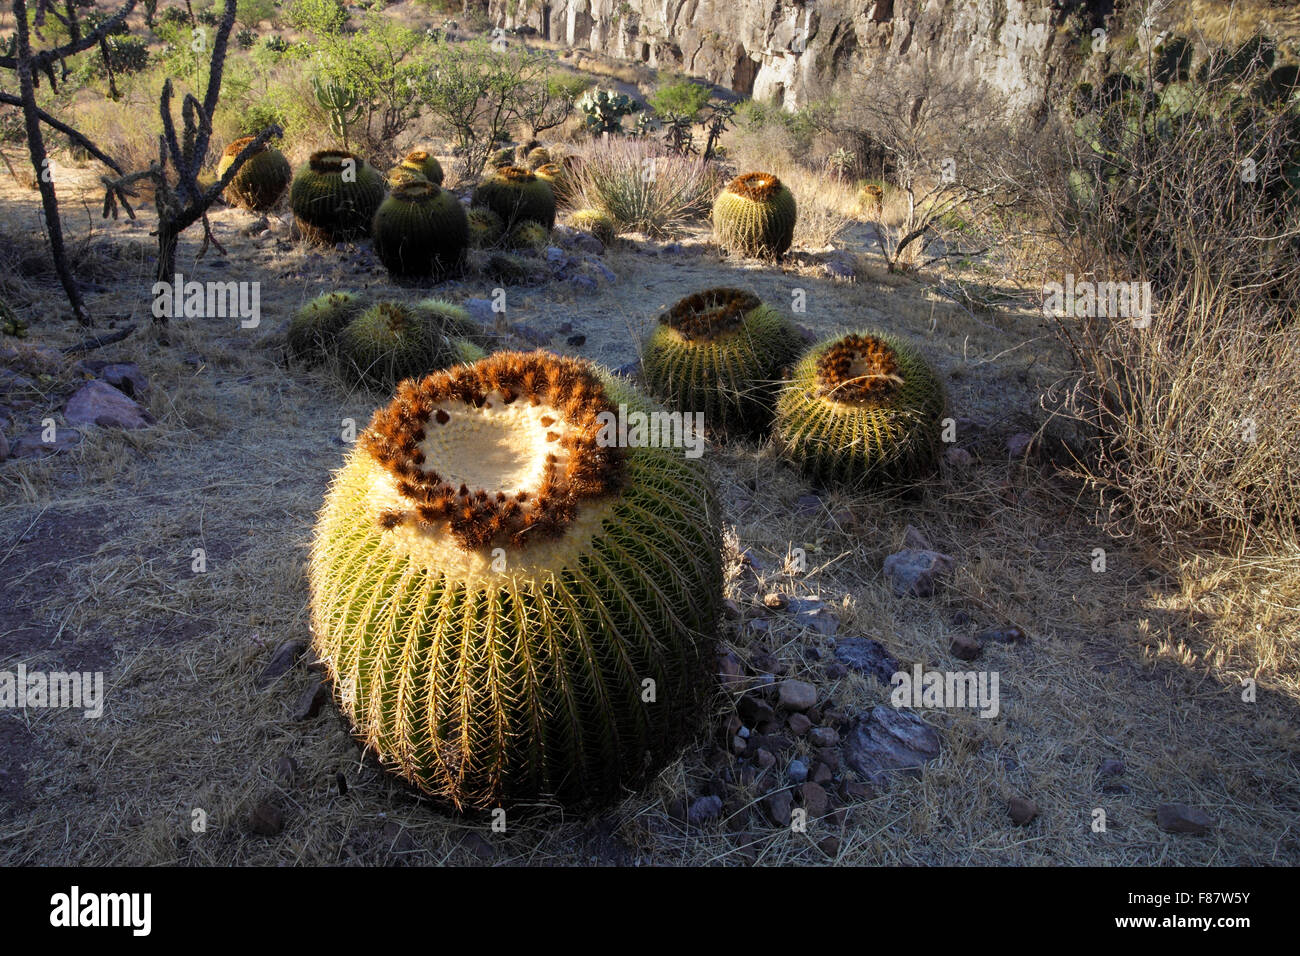 Barrel Cactus Near El Charco, San Miguel de Allende, Mexico Stock Photo